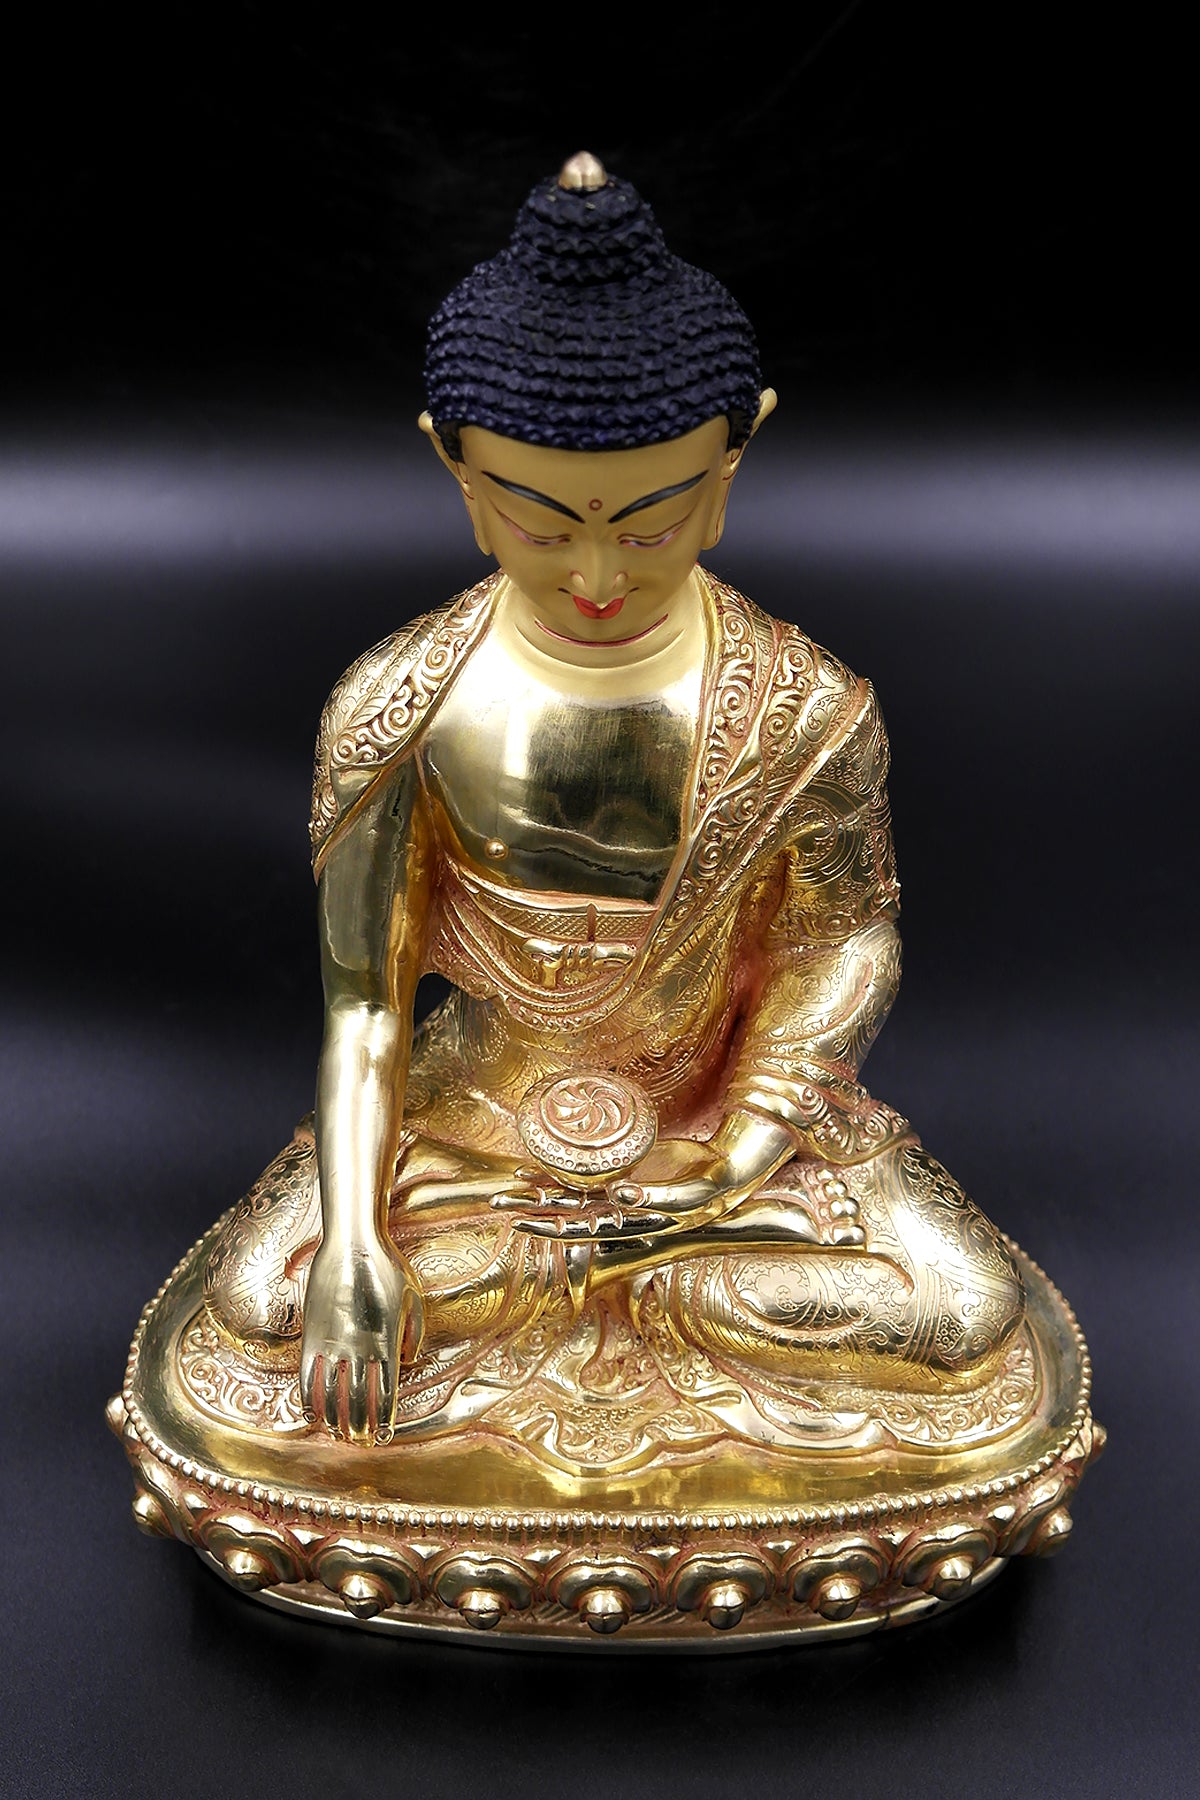 Shakyamuni Buddha Statues for Sale, 10"